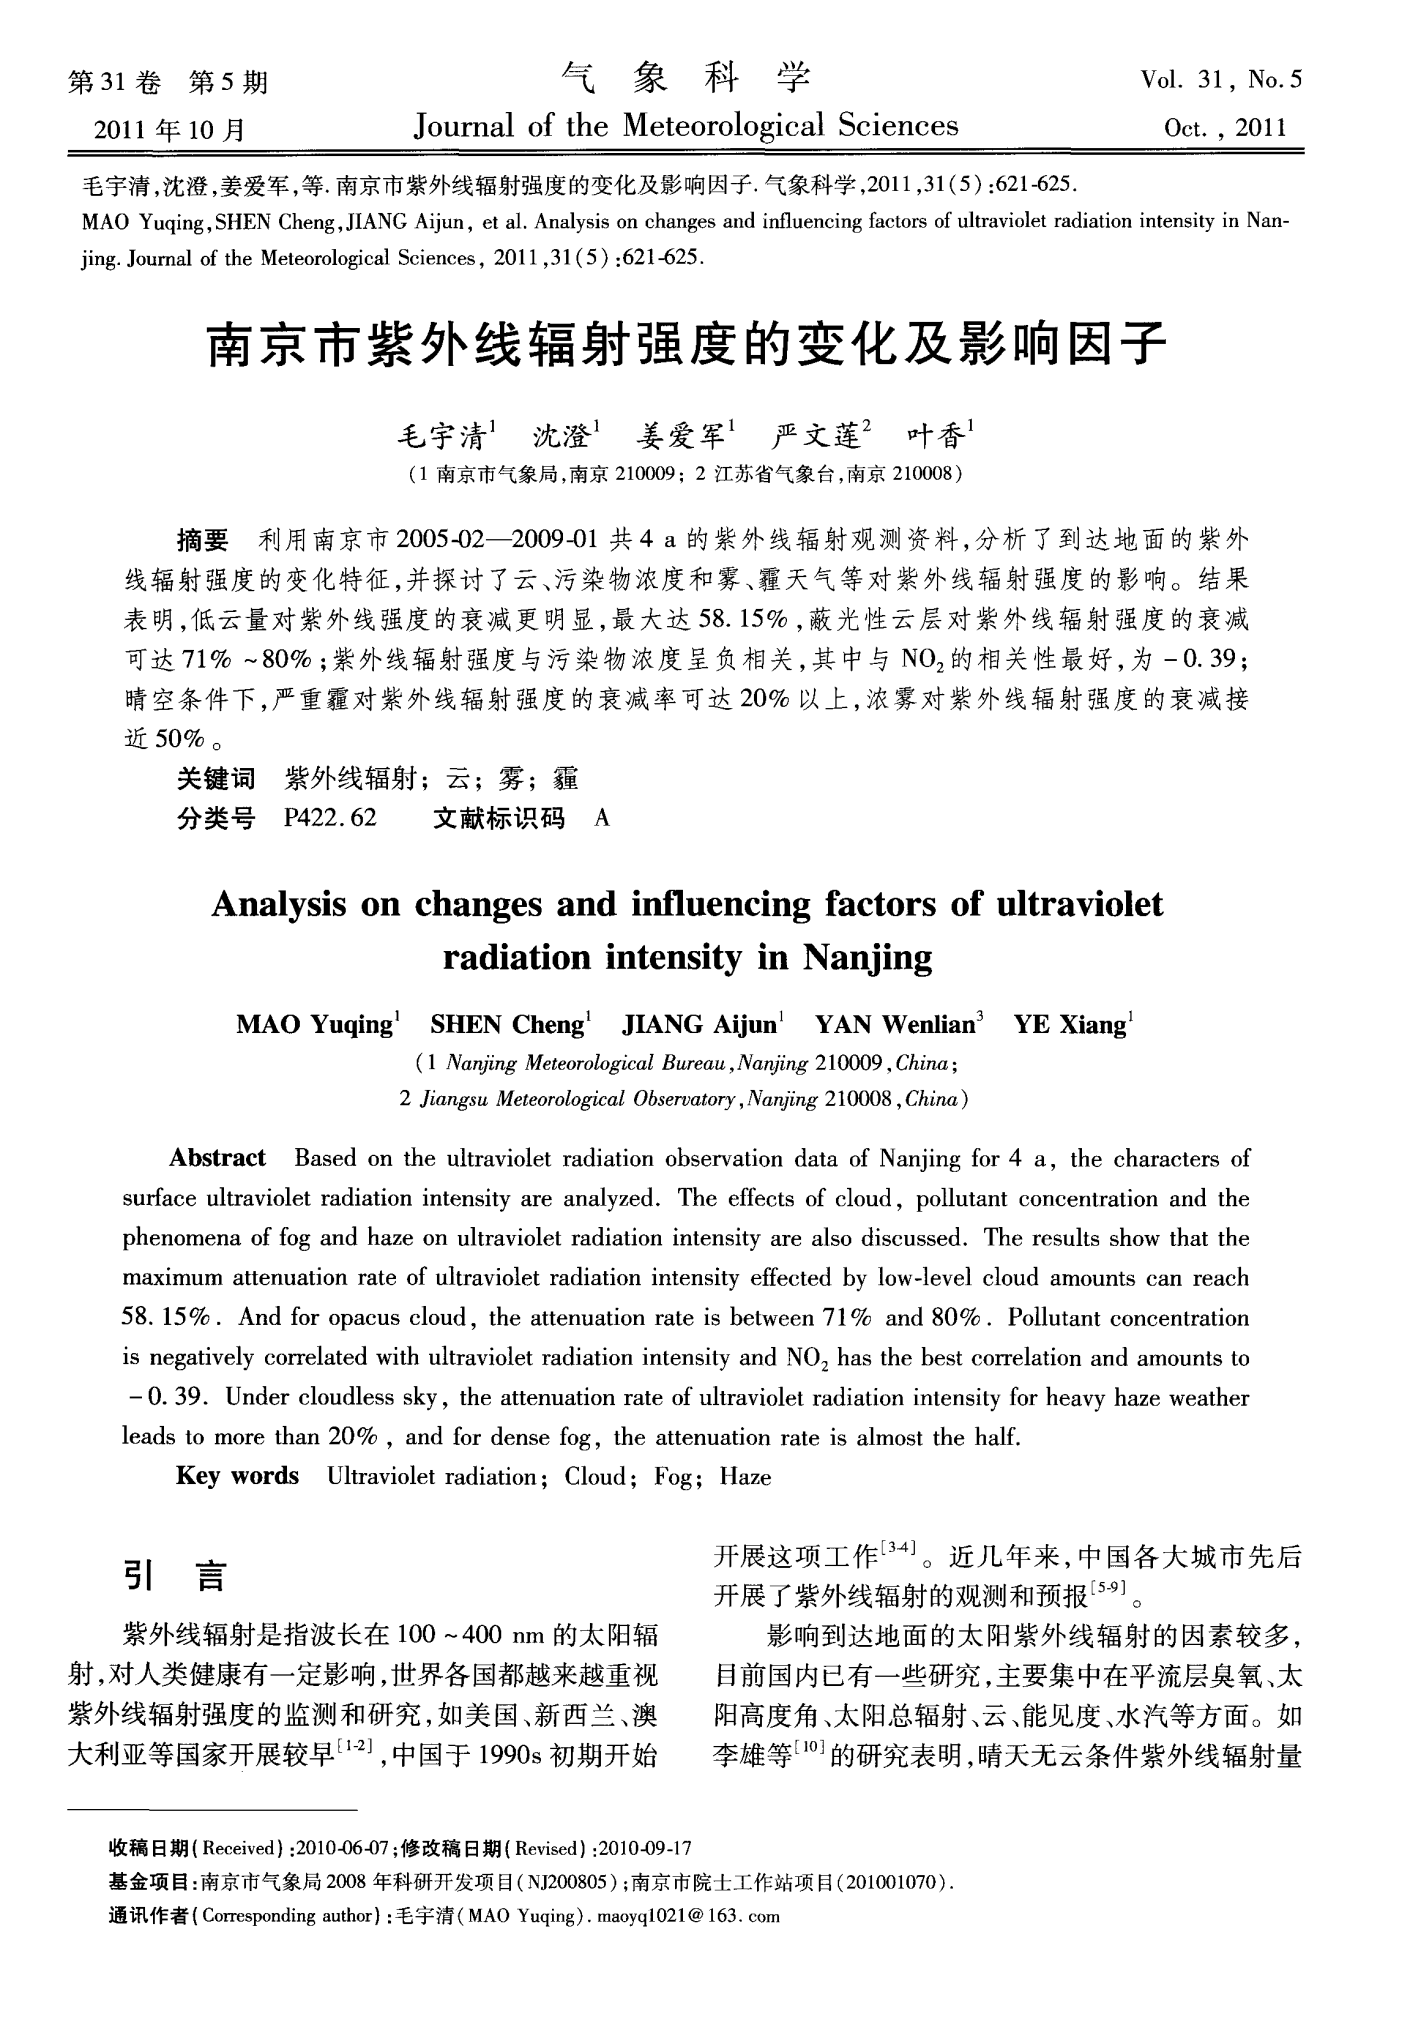 南京市紫外线辐射强度的变化及影响因子